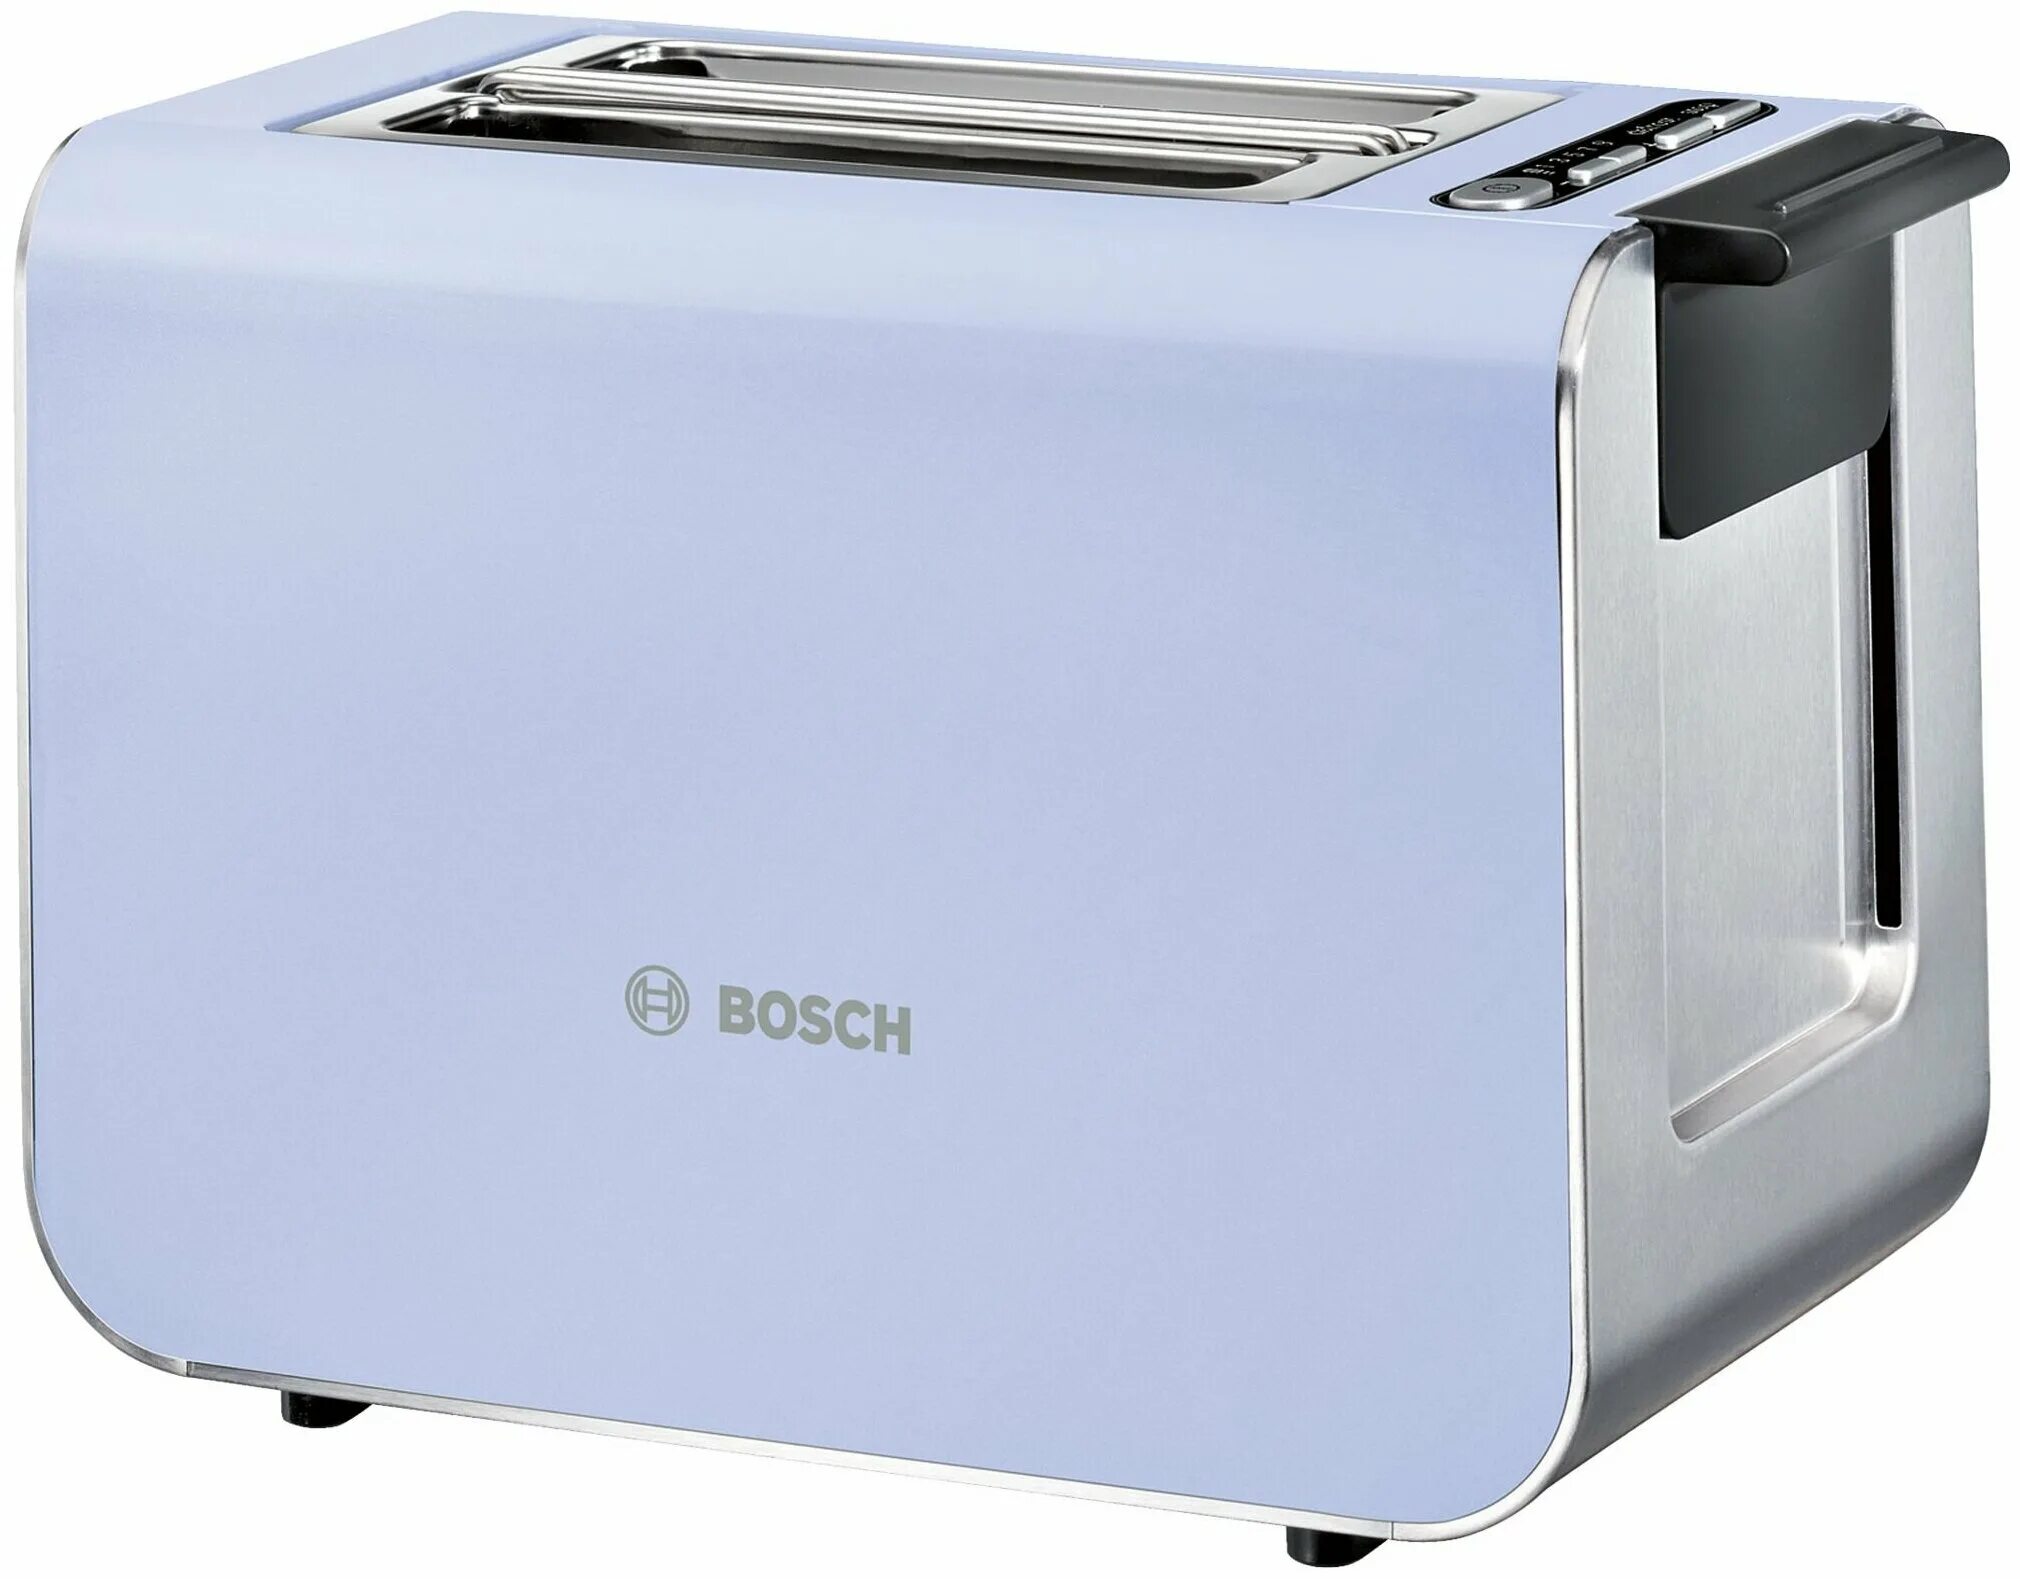 Купить тостер bosch. Тостер Bosch Styline tat8611 белый. Тостеры Bosch tat8612 Styline. Тостер Bosch tat8612, зеленый. Тостер Bosch tat 8619.